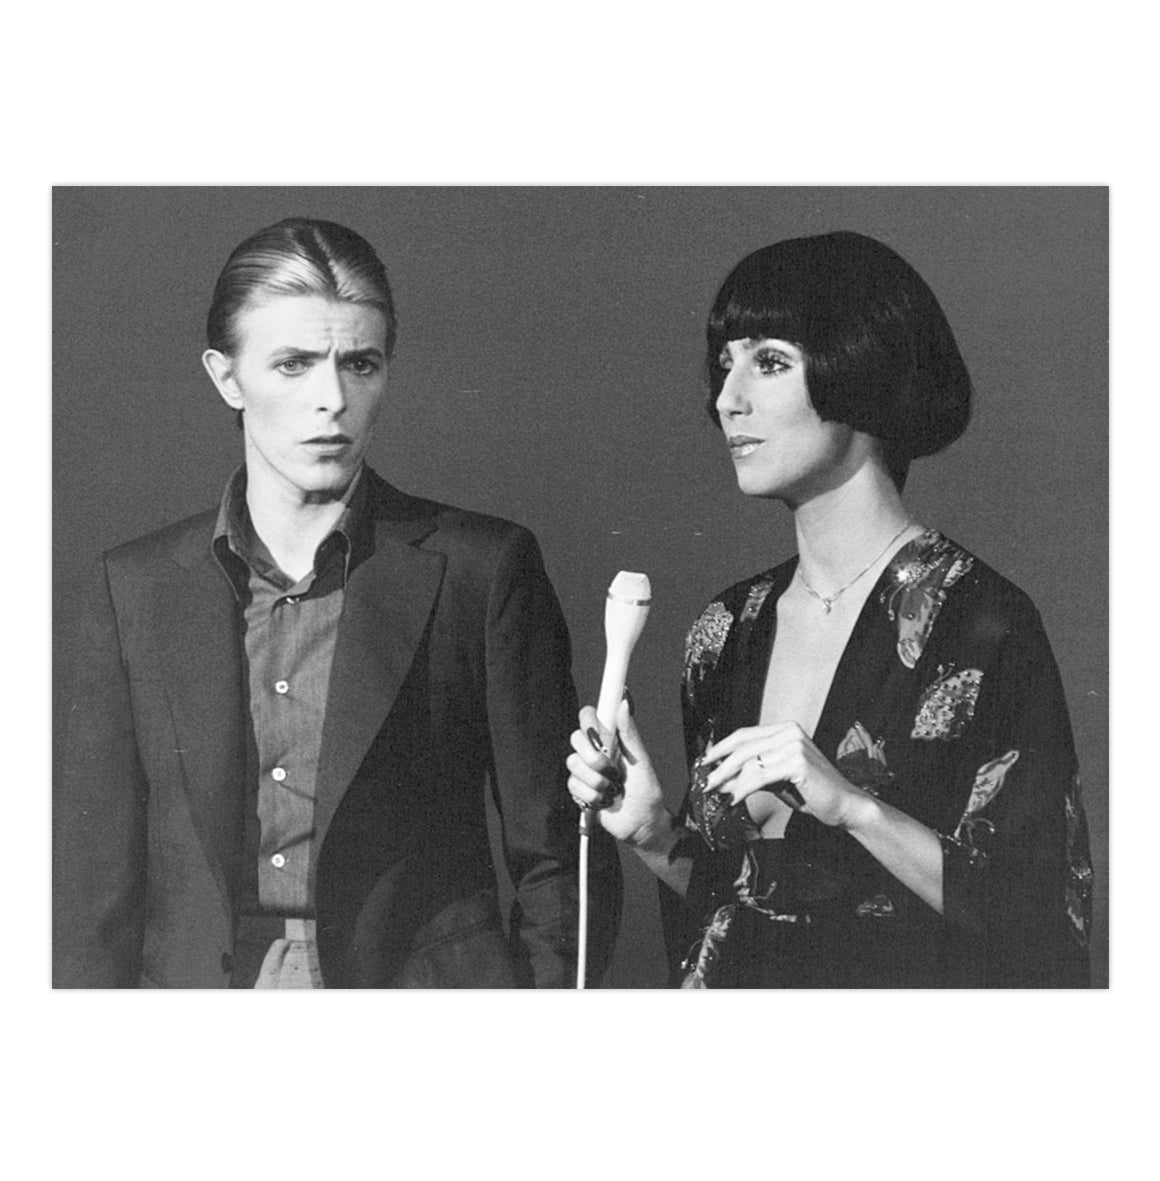 Mini poster adhesivo y reposicionable: Bowie / Cher - Tienda Pasquín